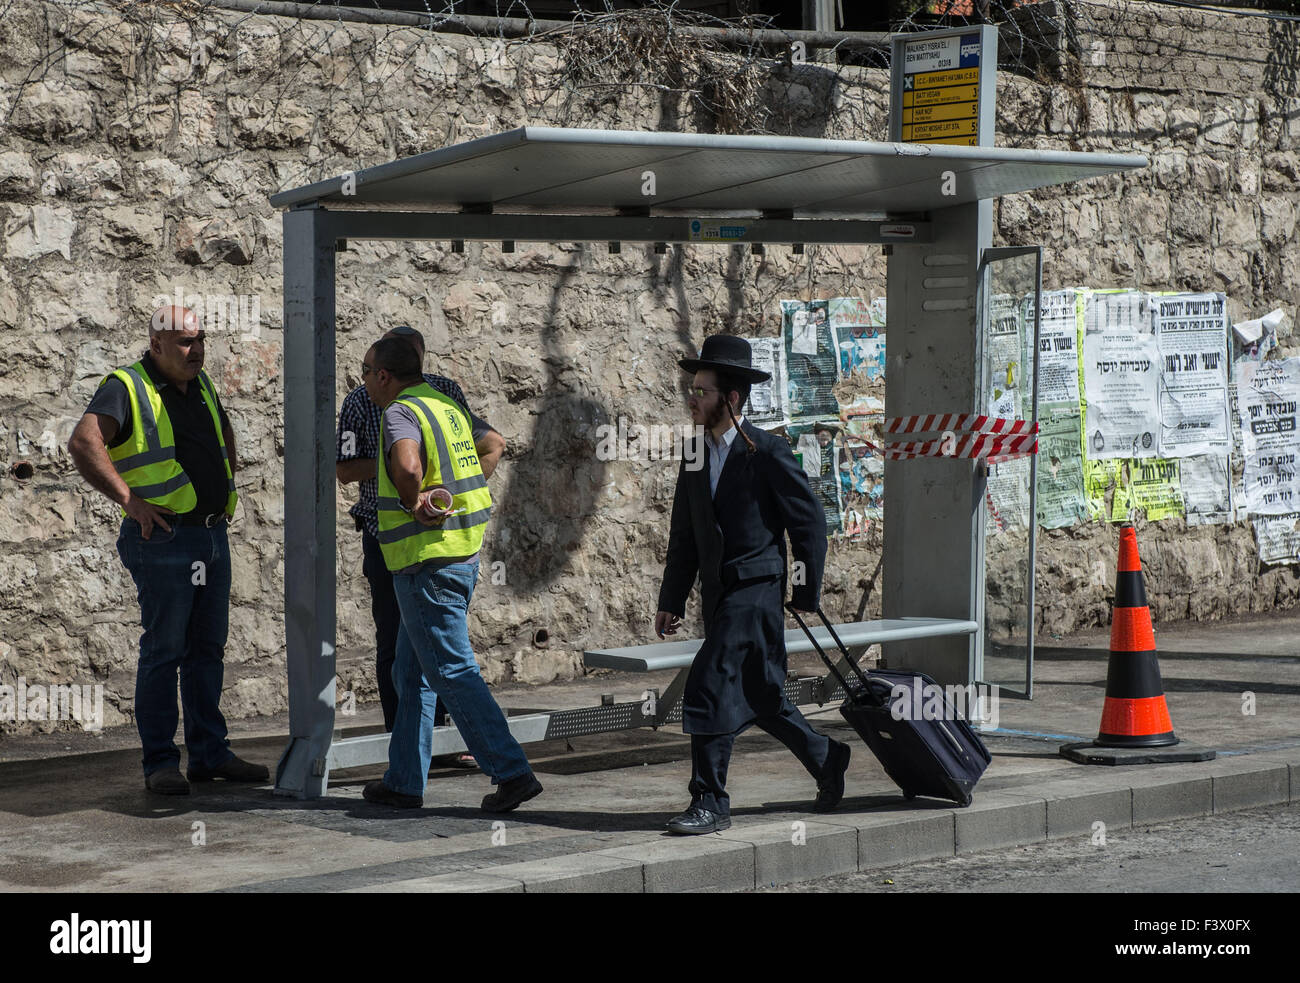 (151013) -- Gerusalemme, 13 ottobre, 2015 (Xinhua) -- Un ultra-ebrea ortodossa uomo cammina passato il sito di una stazione degli autobus attentato a Gerusalemme, su 13 Ottobre, 2015. Almeno tre israeliani sono stati uccisi e 26 altri feriti in quattro attacchi di palestinesi a Gerusalemme e la città di Ra'anana Martedì mattina la polizia israeliana detta. Un palestinese su un furgone con il logo di Israele nazionale di telecomunicazioni della società, Bezeq, correva su pendolari in corrispondenza di una stazione di autobus in Geula quartiere nel centro di Gerusalemme. Egli si è poi recato al di fuori del suo veicolo, che trafigge i passanti con un coltello. Servizi di salvataggio ha detto che ha ucciso uno e injur Foto Stock